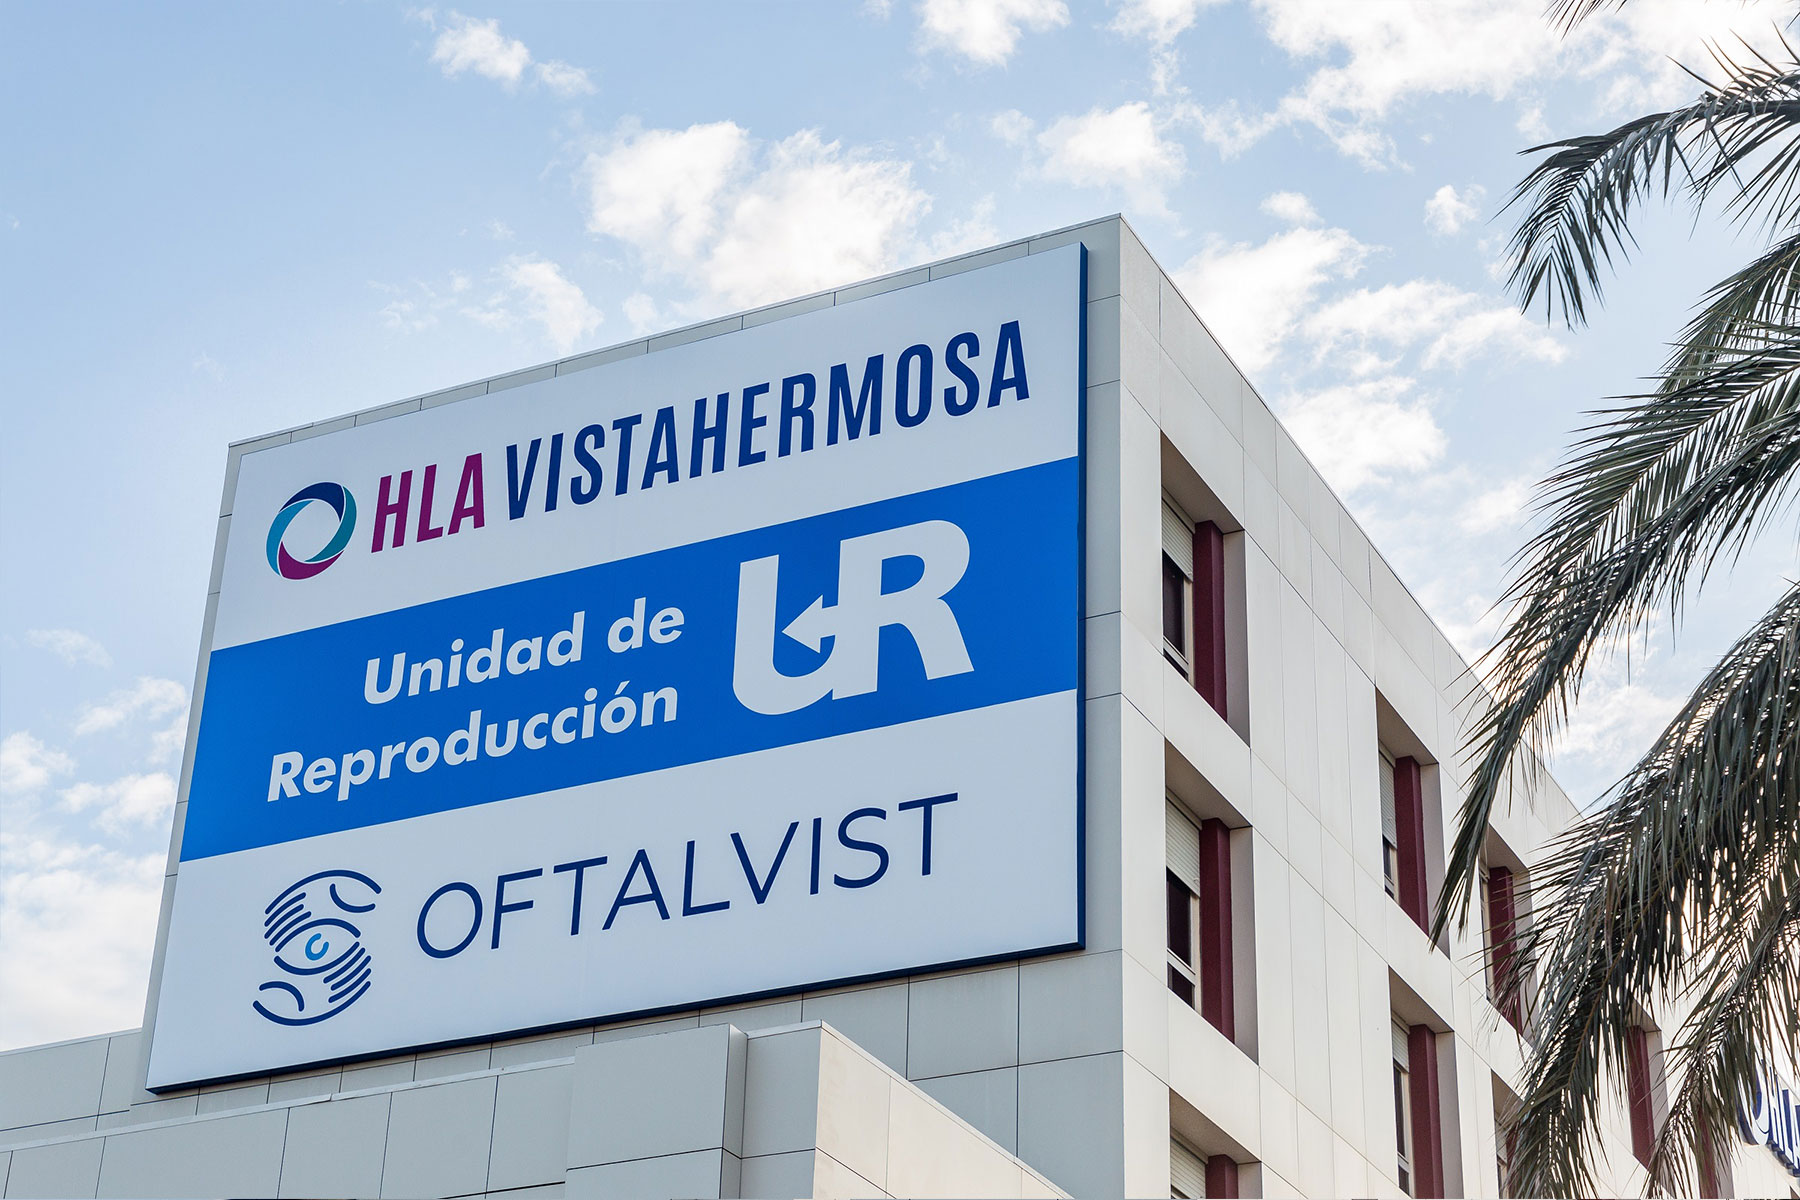 Zum dritten Mal in Folge wurde die HLA Vistahermosa als bestes Privatkrankenhaus in Alicante ausgezeichnet